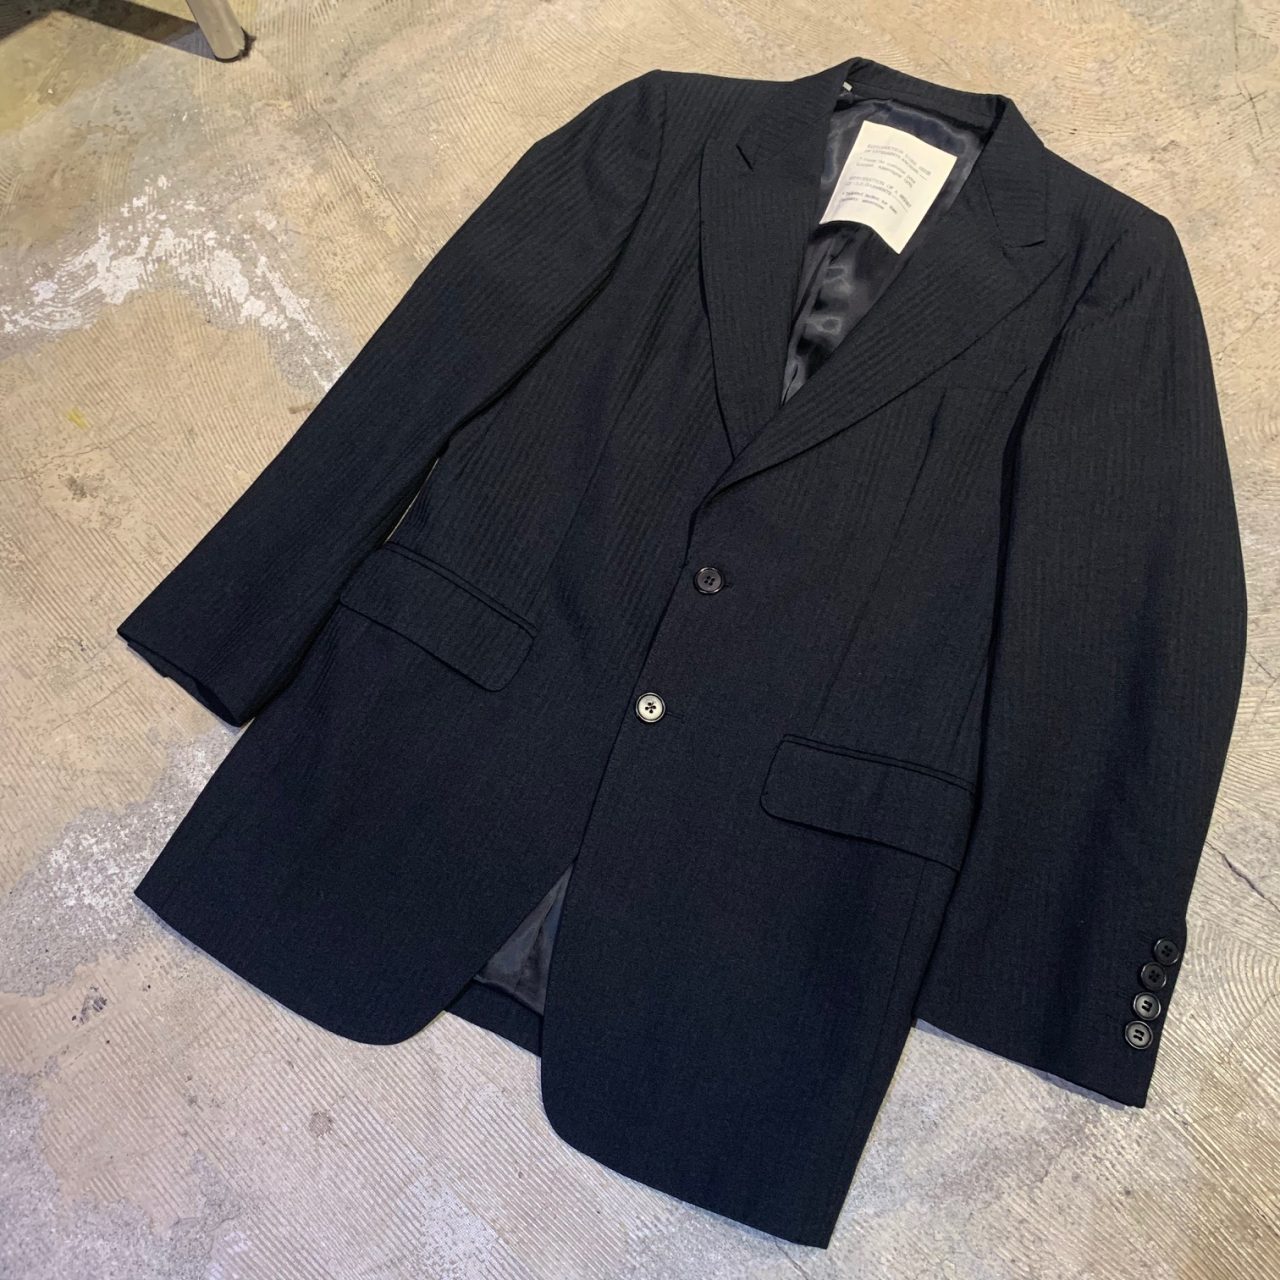 Maison Martin Margiela 94AW REPRODUCTION Tailored Jacket